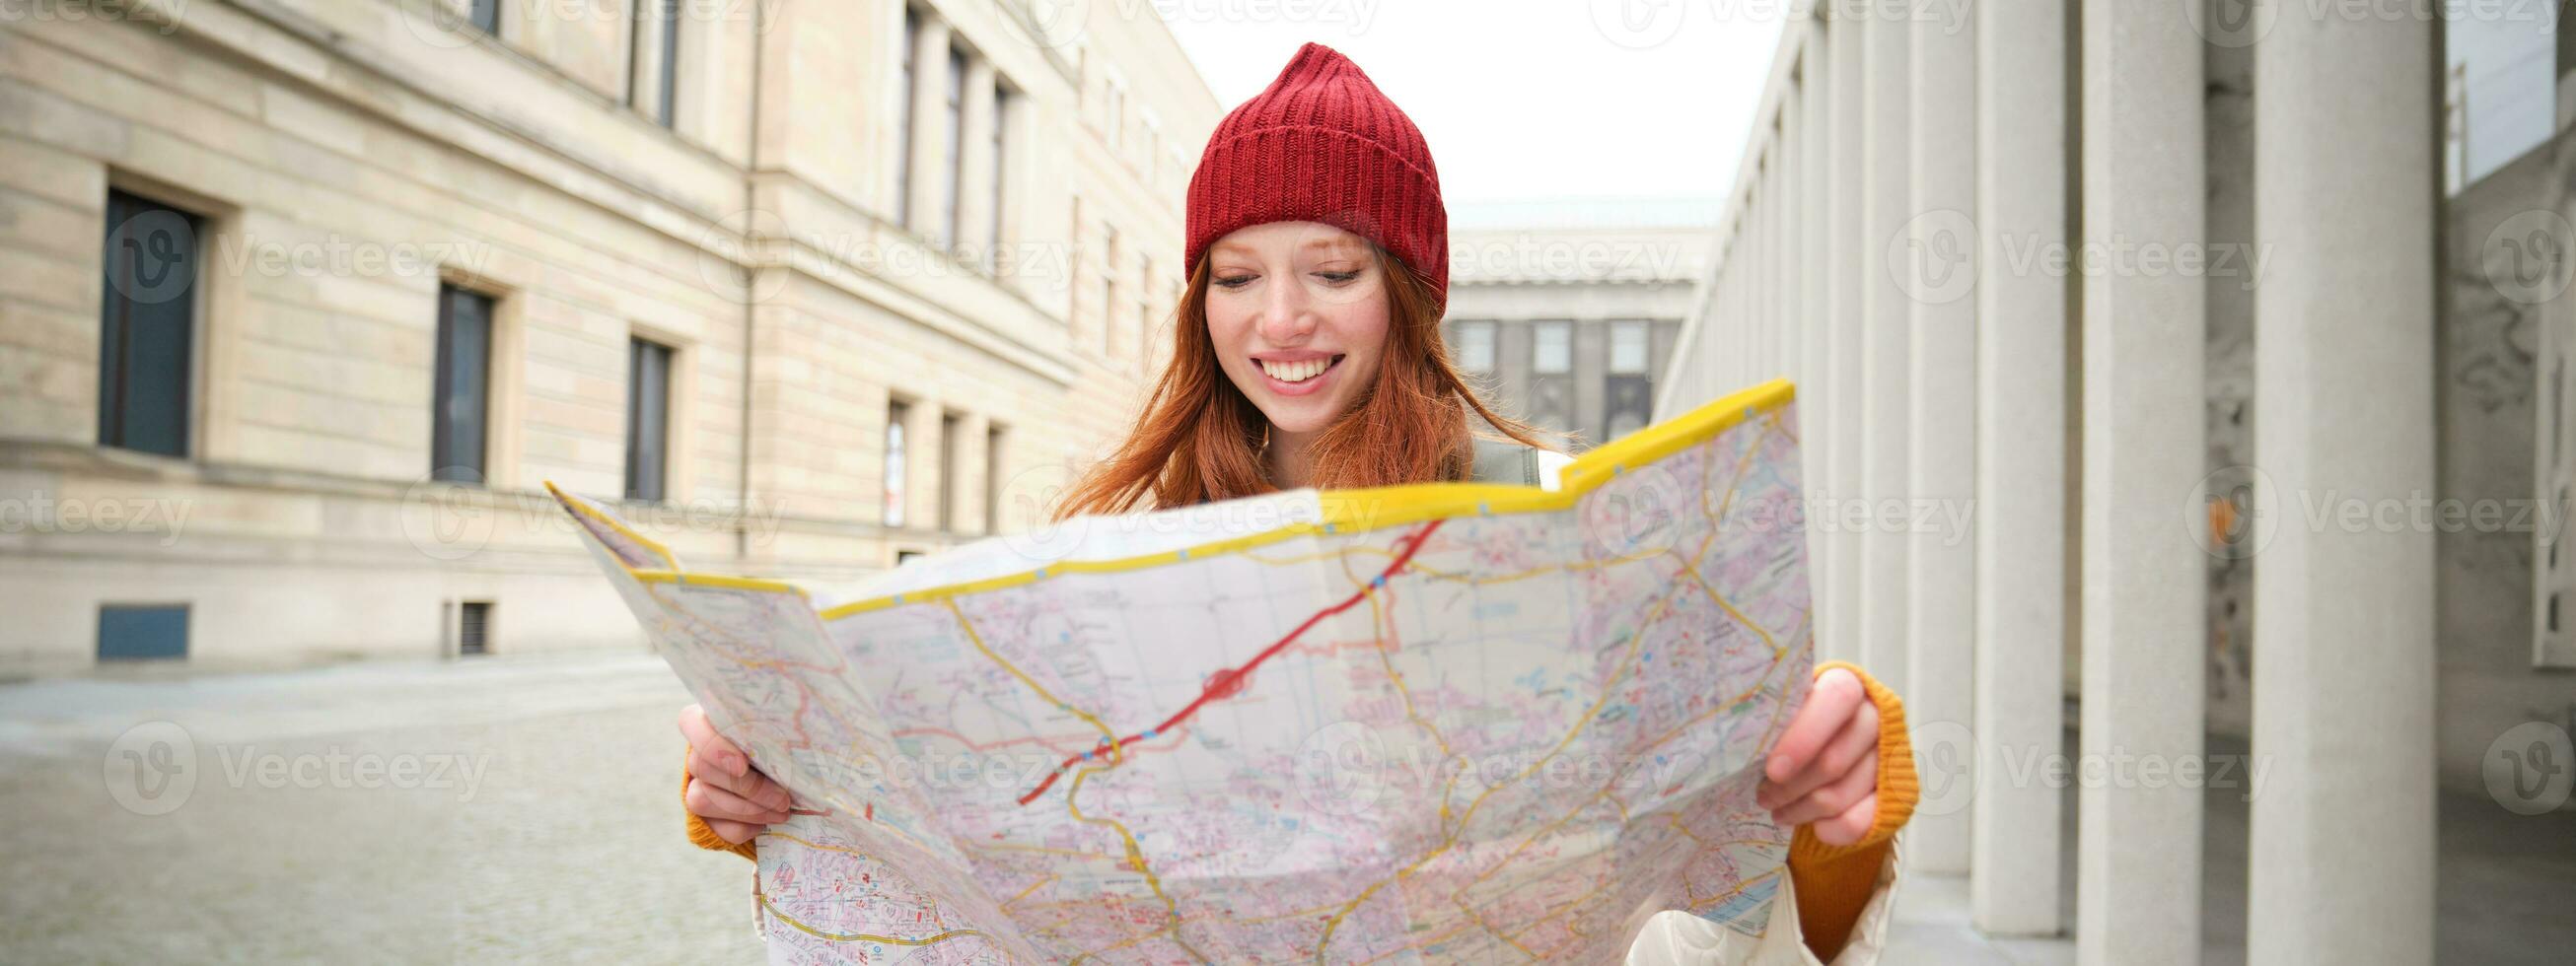 roodharige meisje, toerist onderzoekt stad, looks Bij papier kaart naar vind manier voor historisch oriëntatiepunten, vrouw Aan haar reis in de omgeving van Europa zoekopdrachten voor bezienswaardigheden bekijken foto